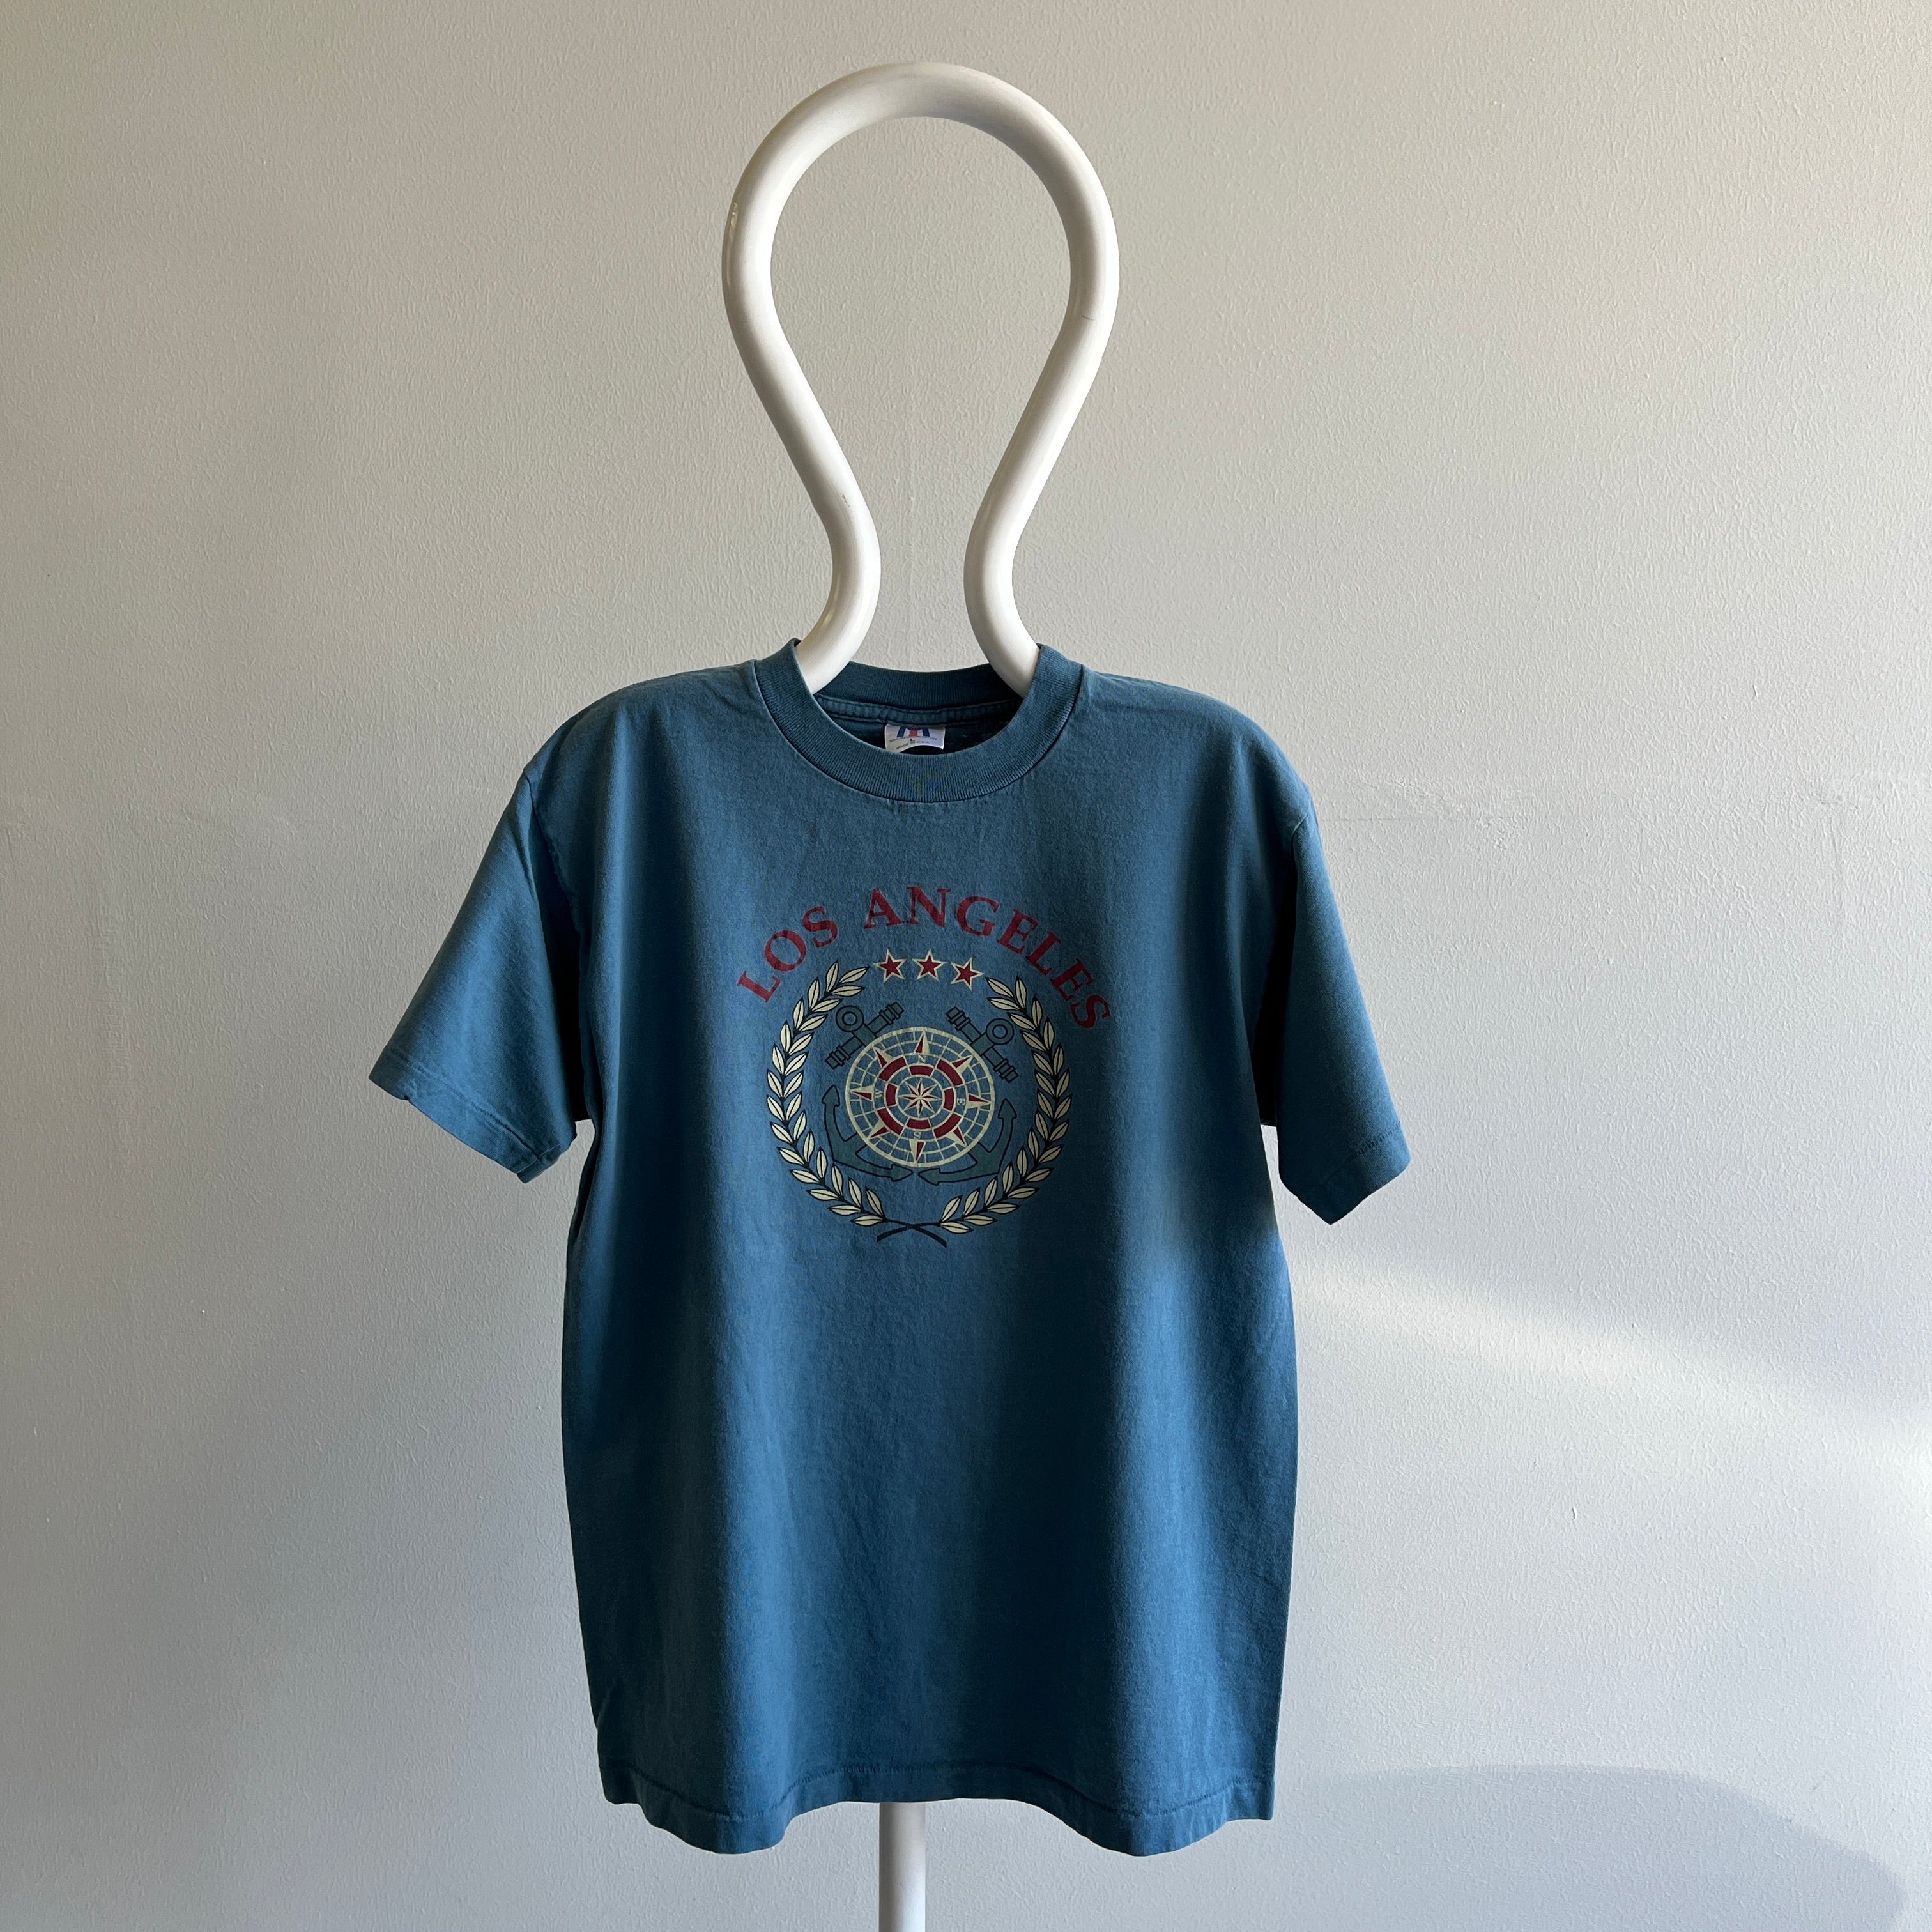 T-shirt touristique en coton Los Angeles des années 1990 - Fabriqué aux États-Unis